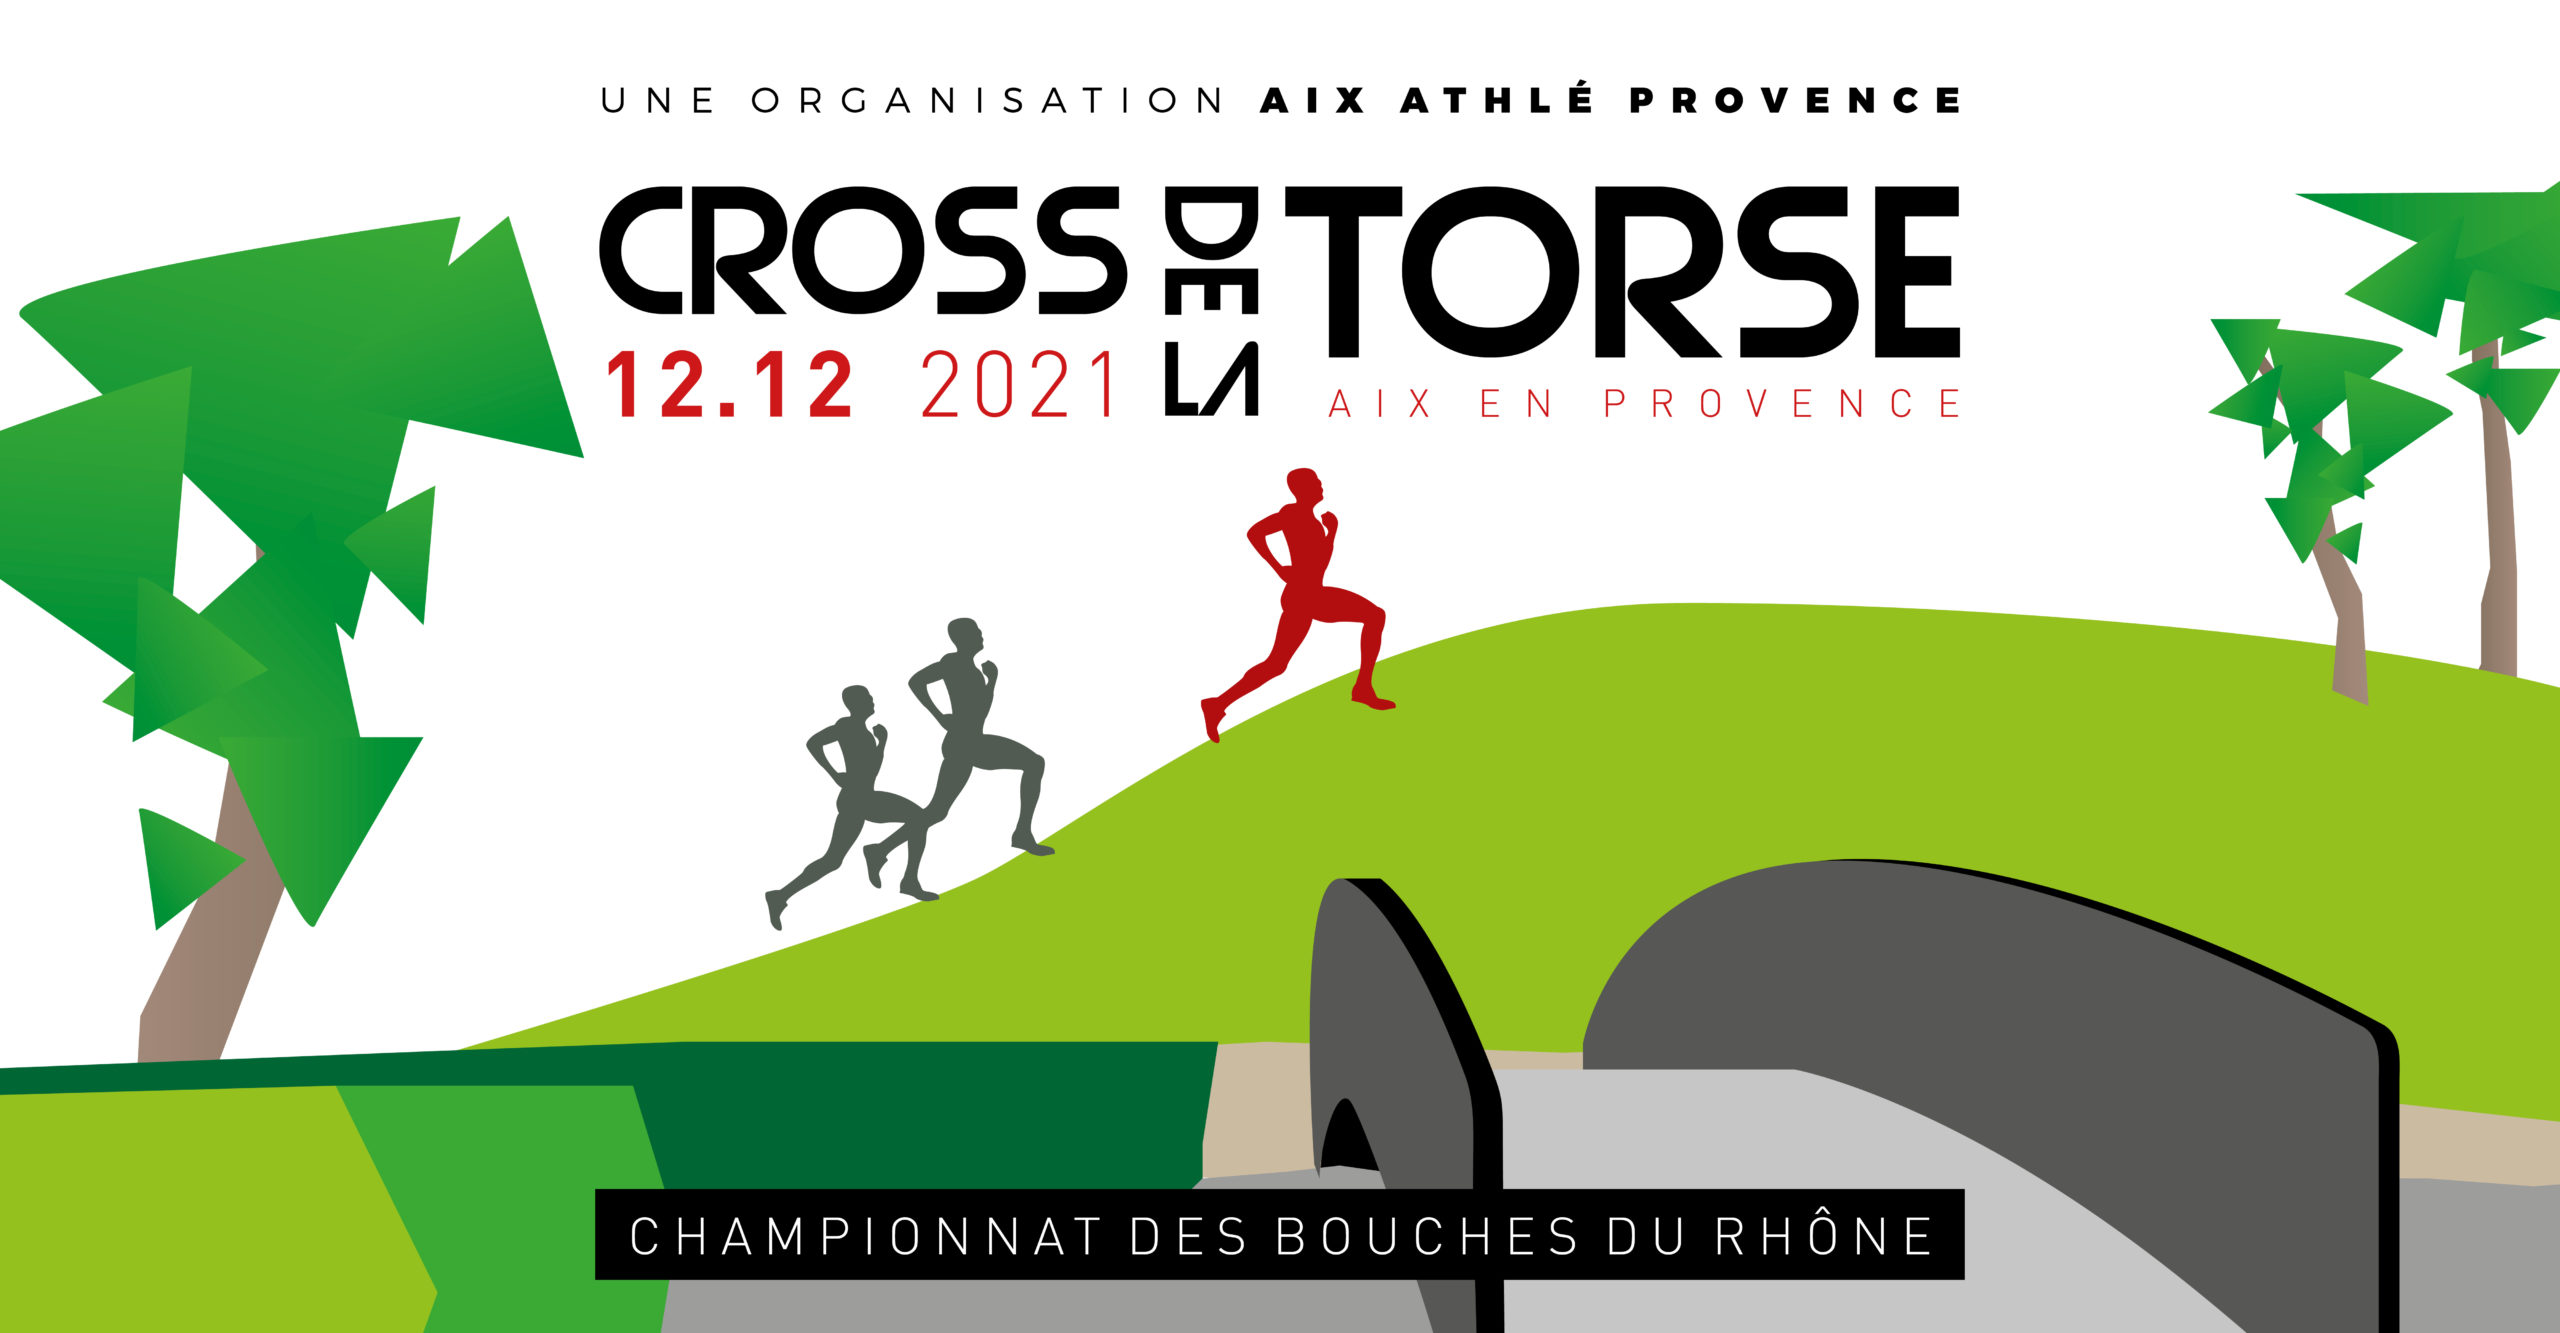 CROSS DE LA TORSE - Aix Athlé Provence